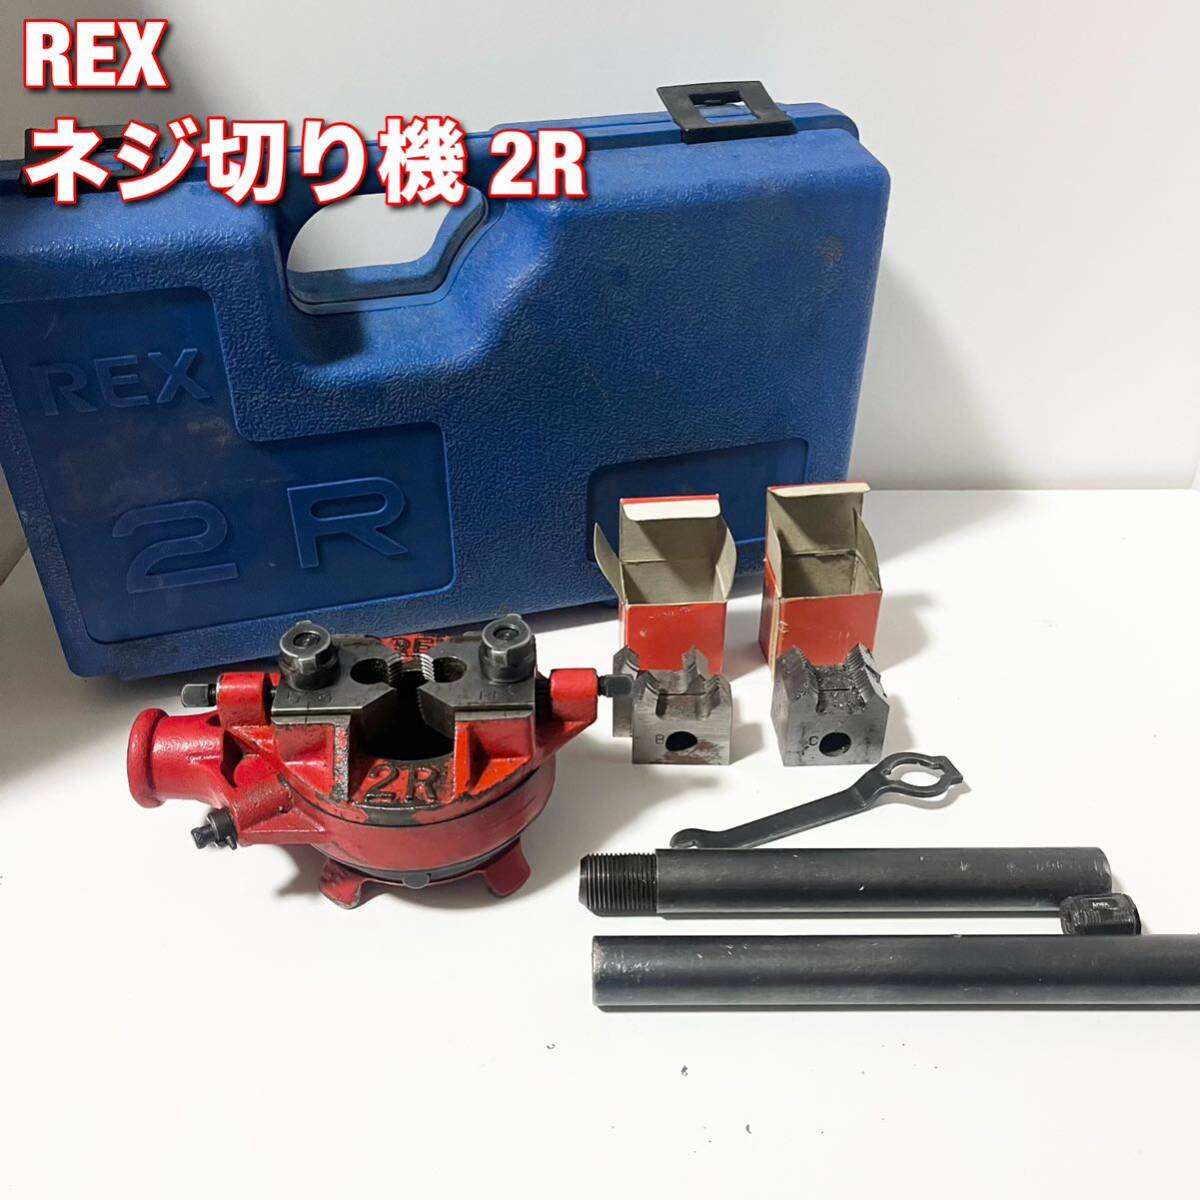 REX レッキス 手動ネジ切り機2R